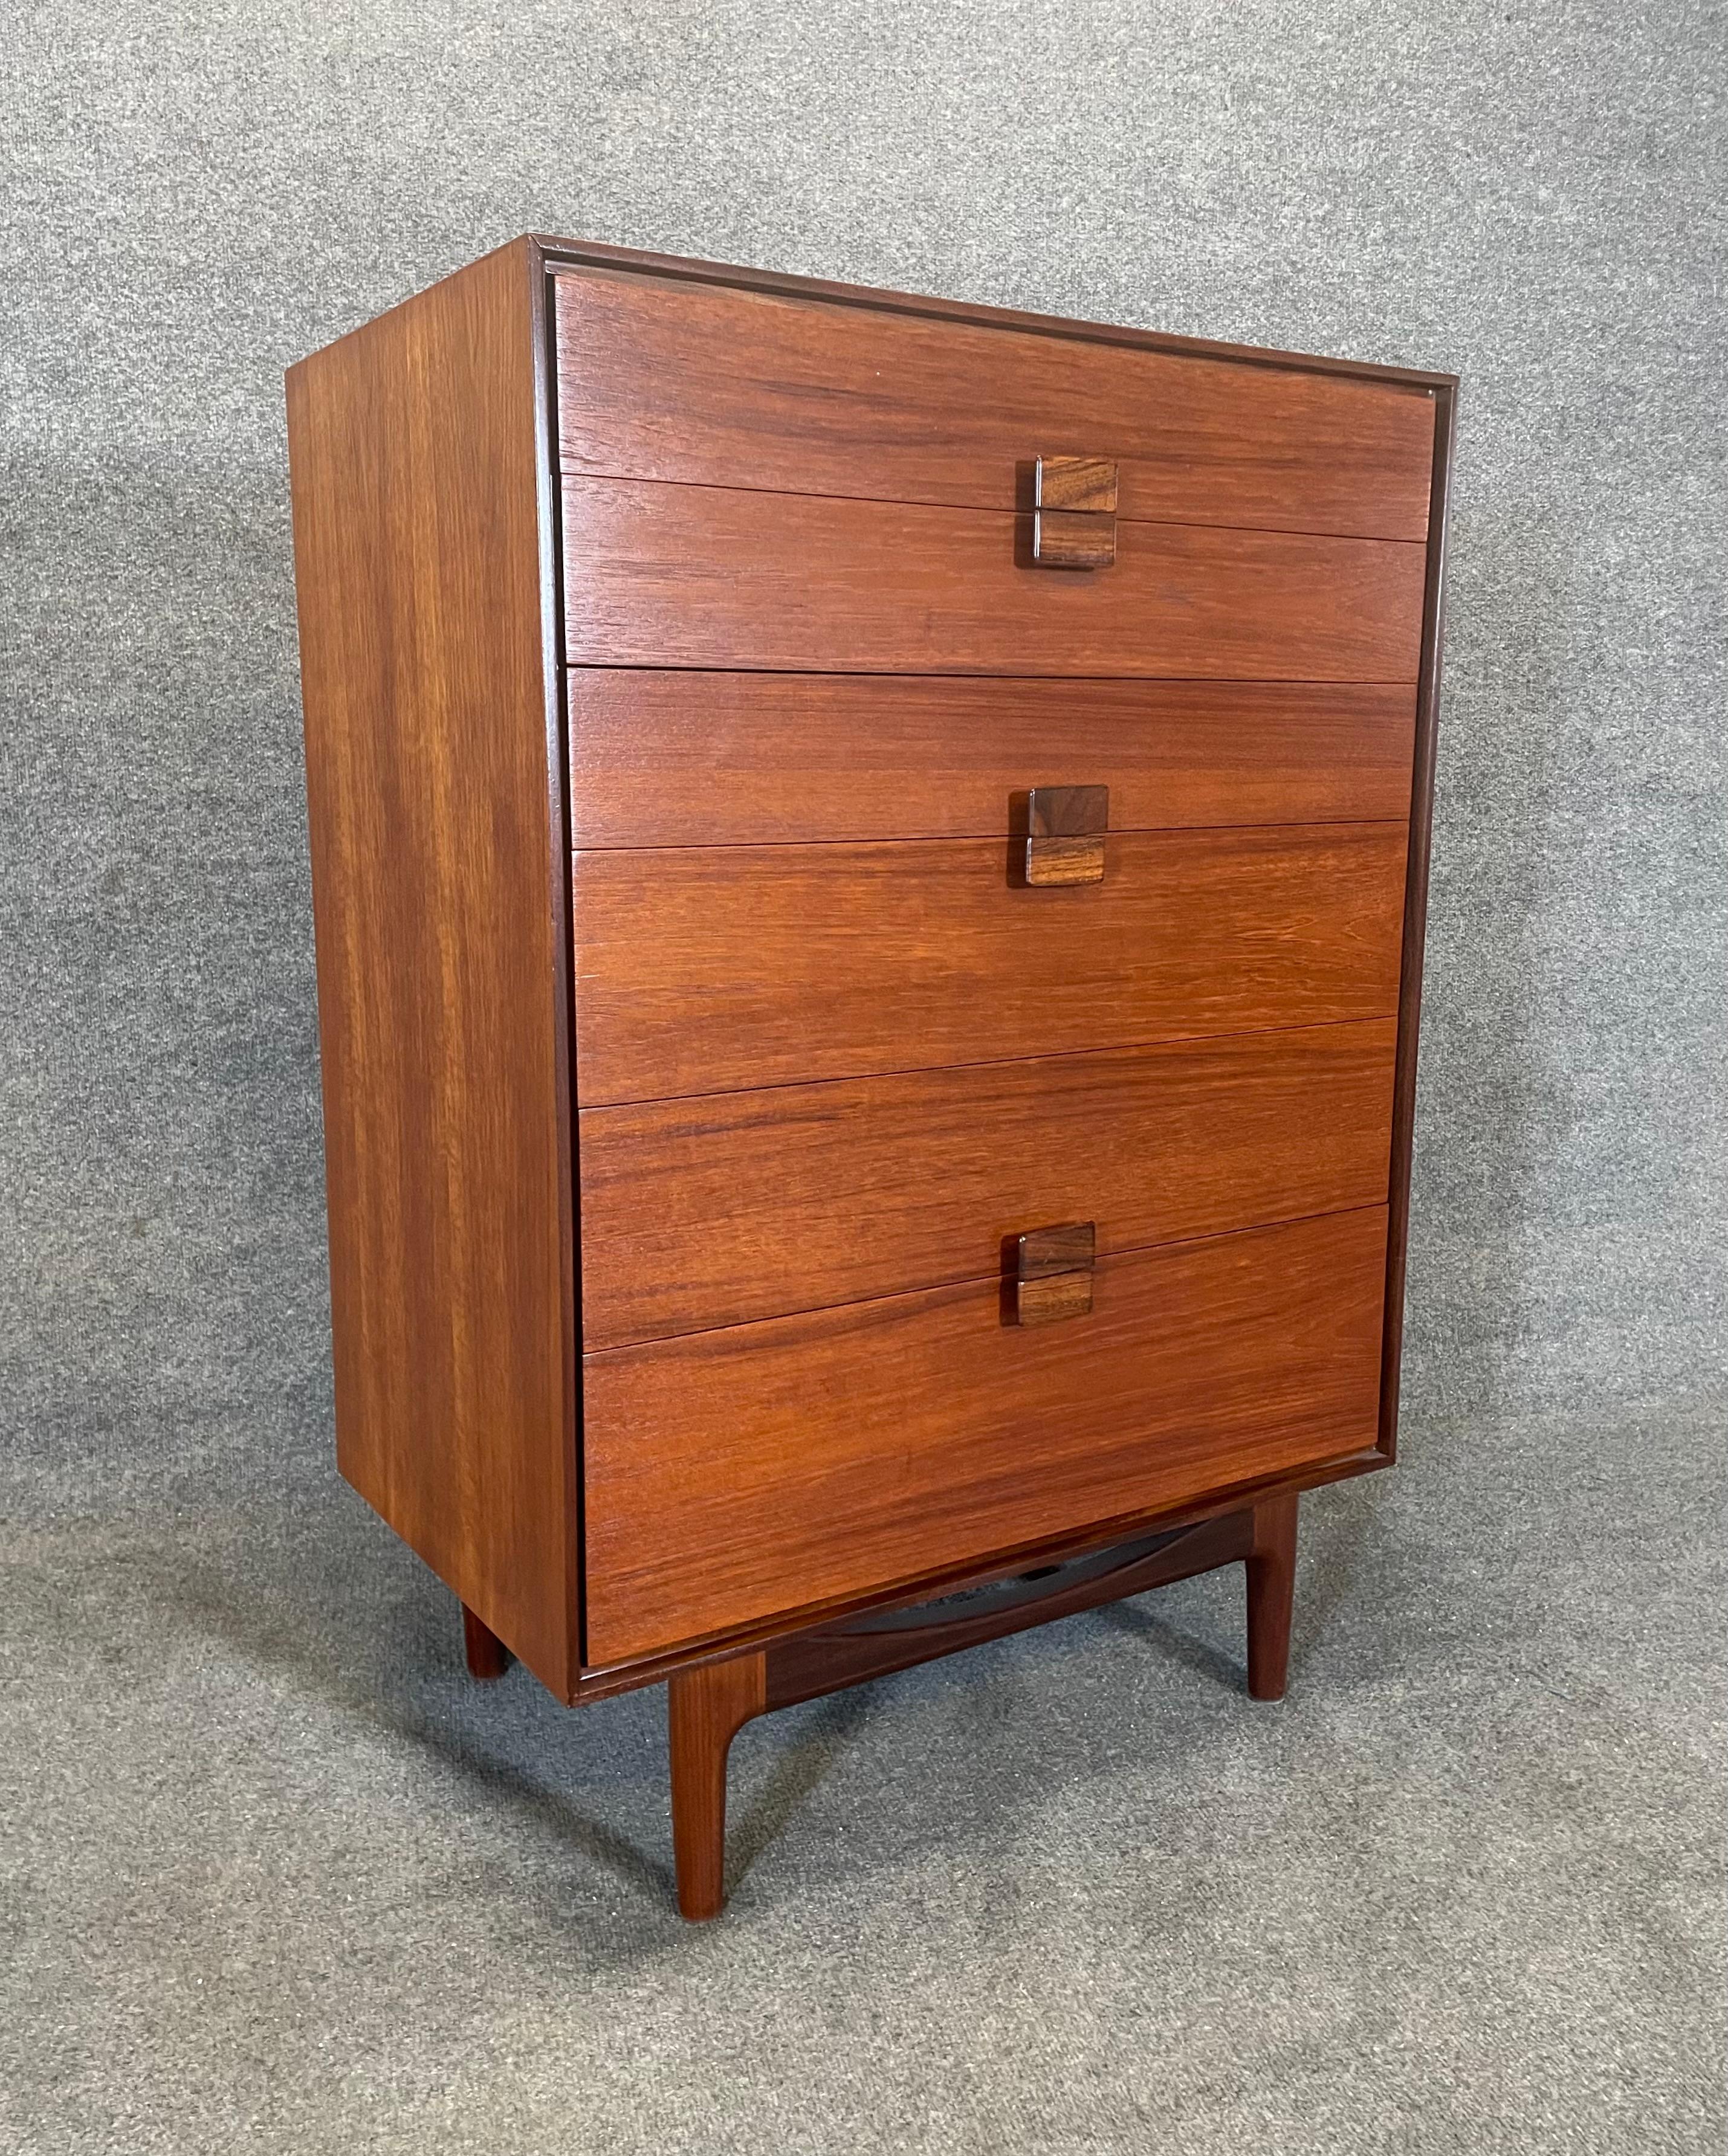 Woodwork Vintage British Mid Century Modern Dresser by Kofod Larsen for G Plan